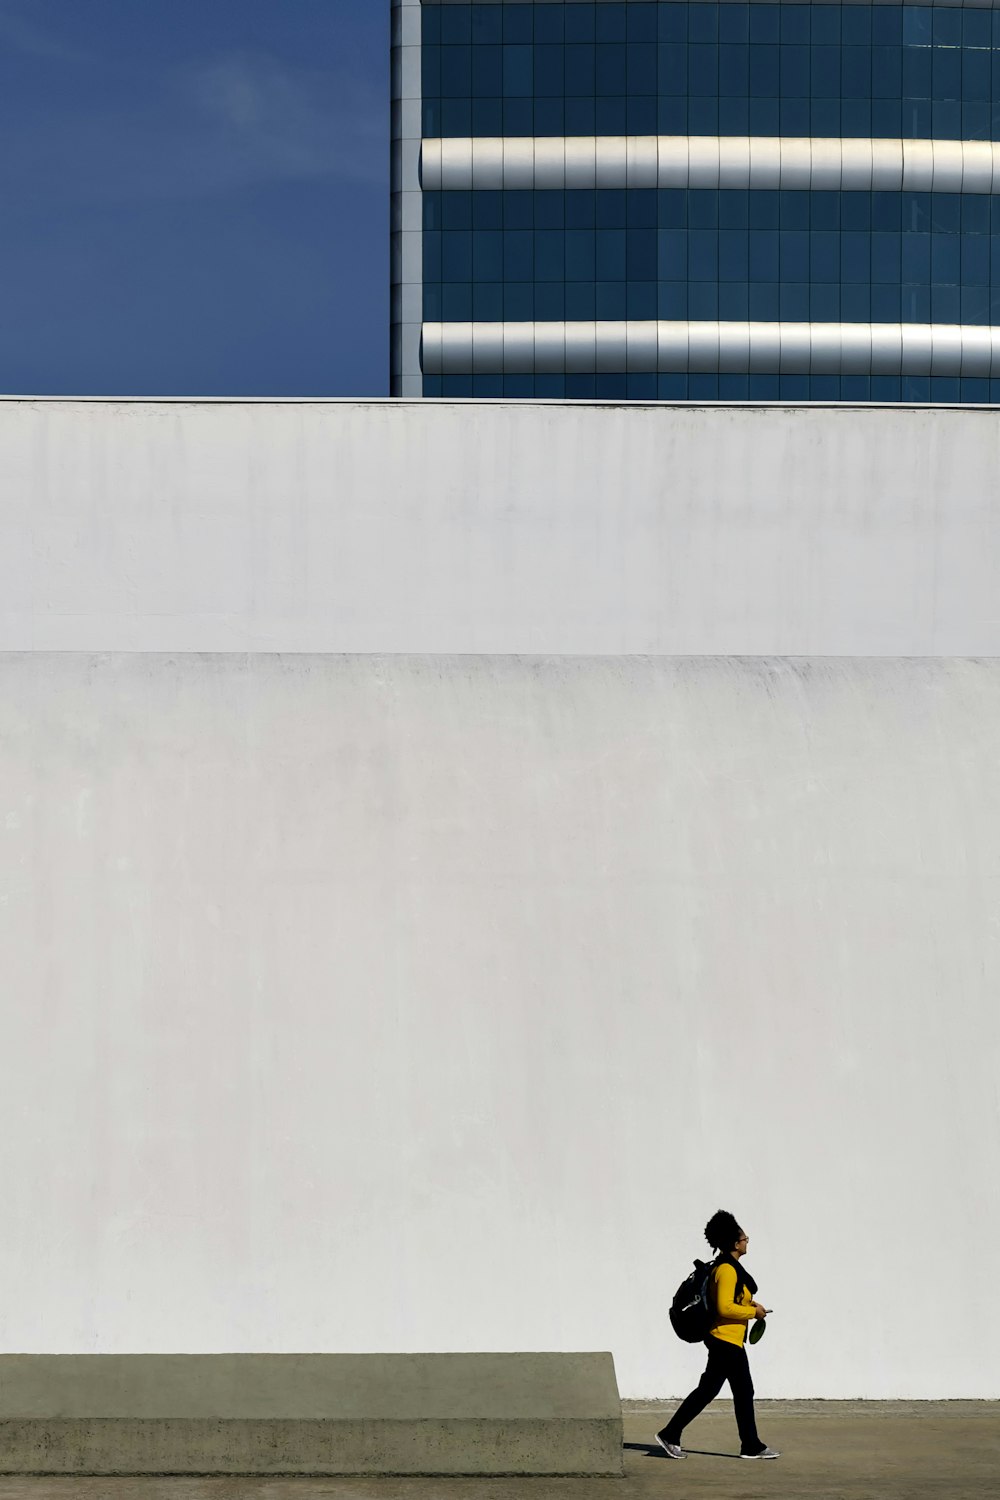 umano in maglietta gialla a maniche lunghe che cammina accanto al muro di cemento bianco